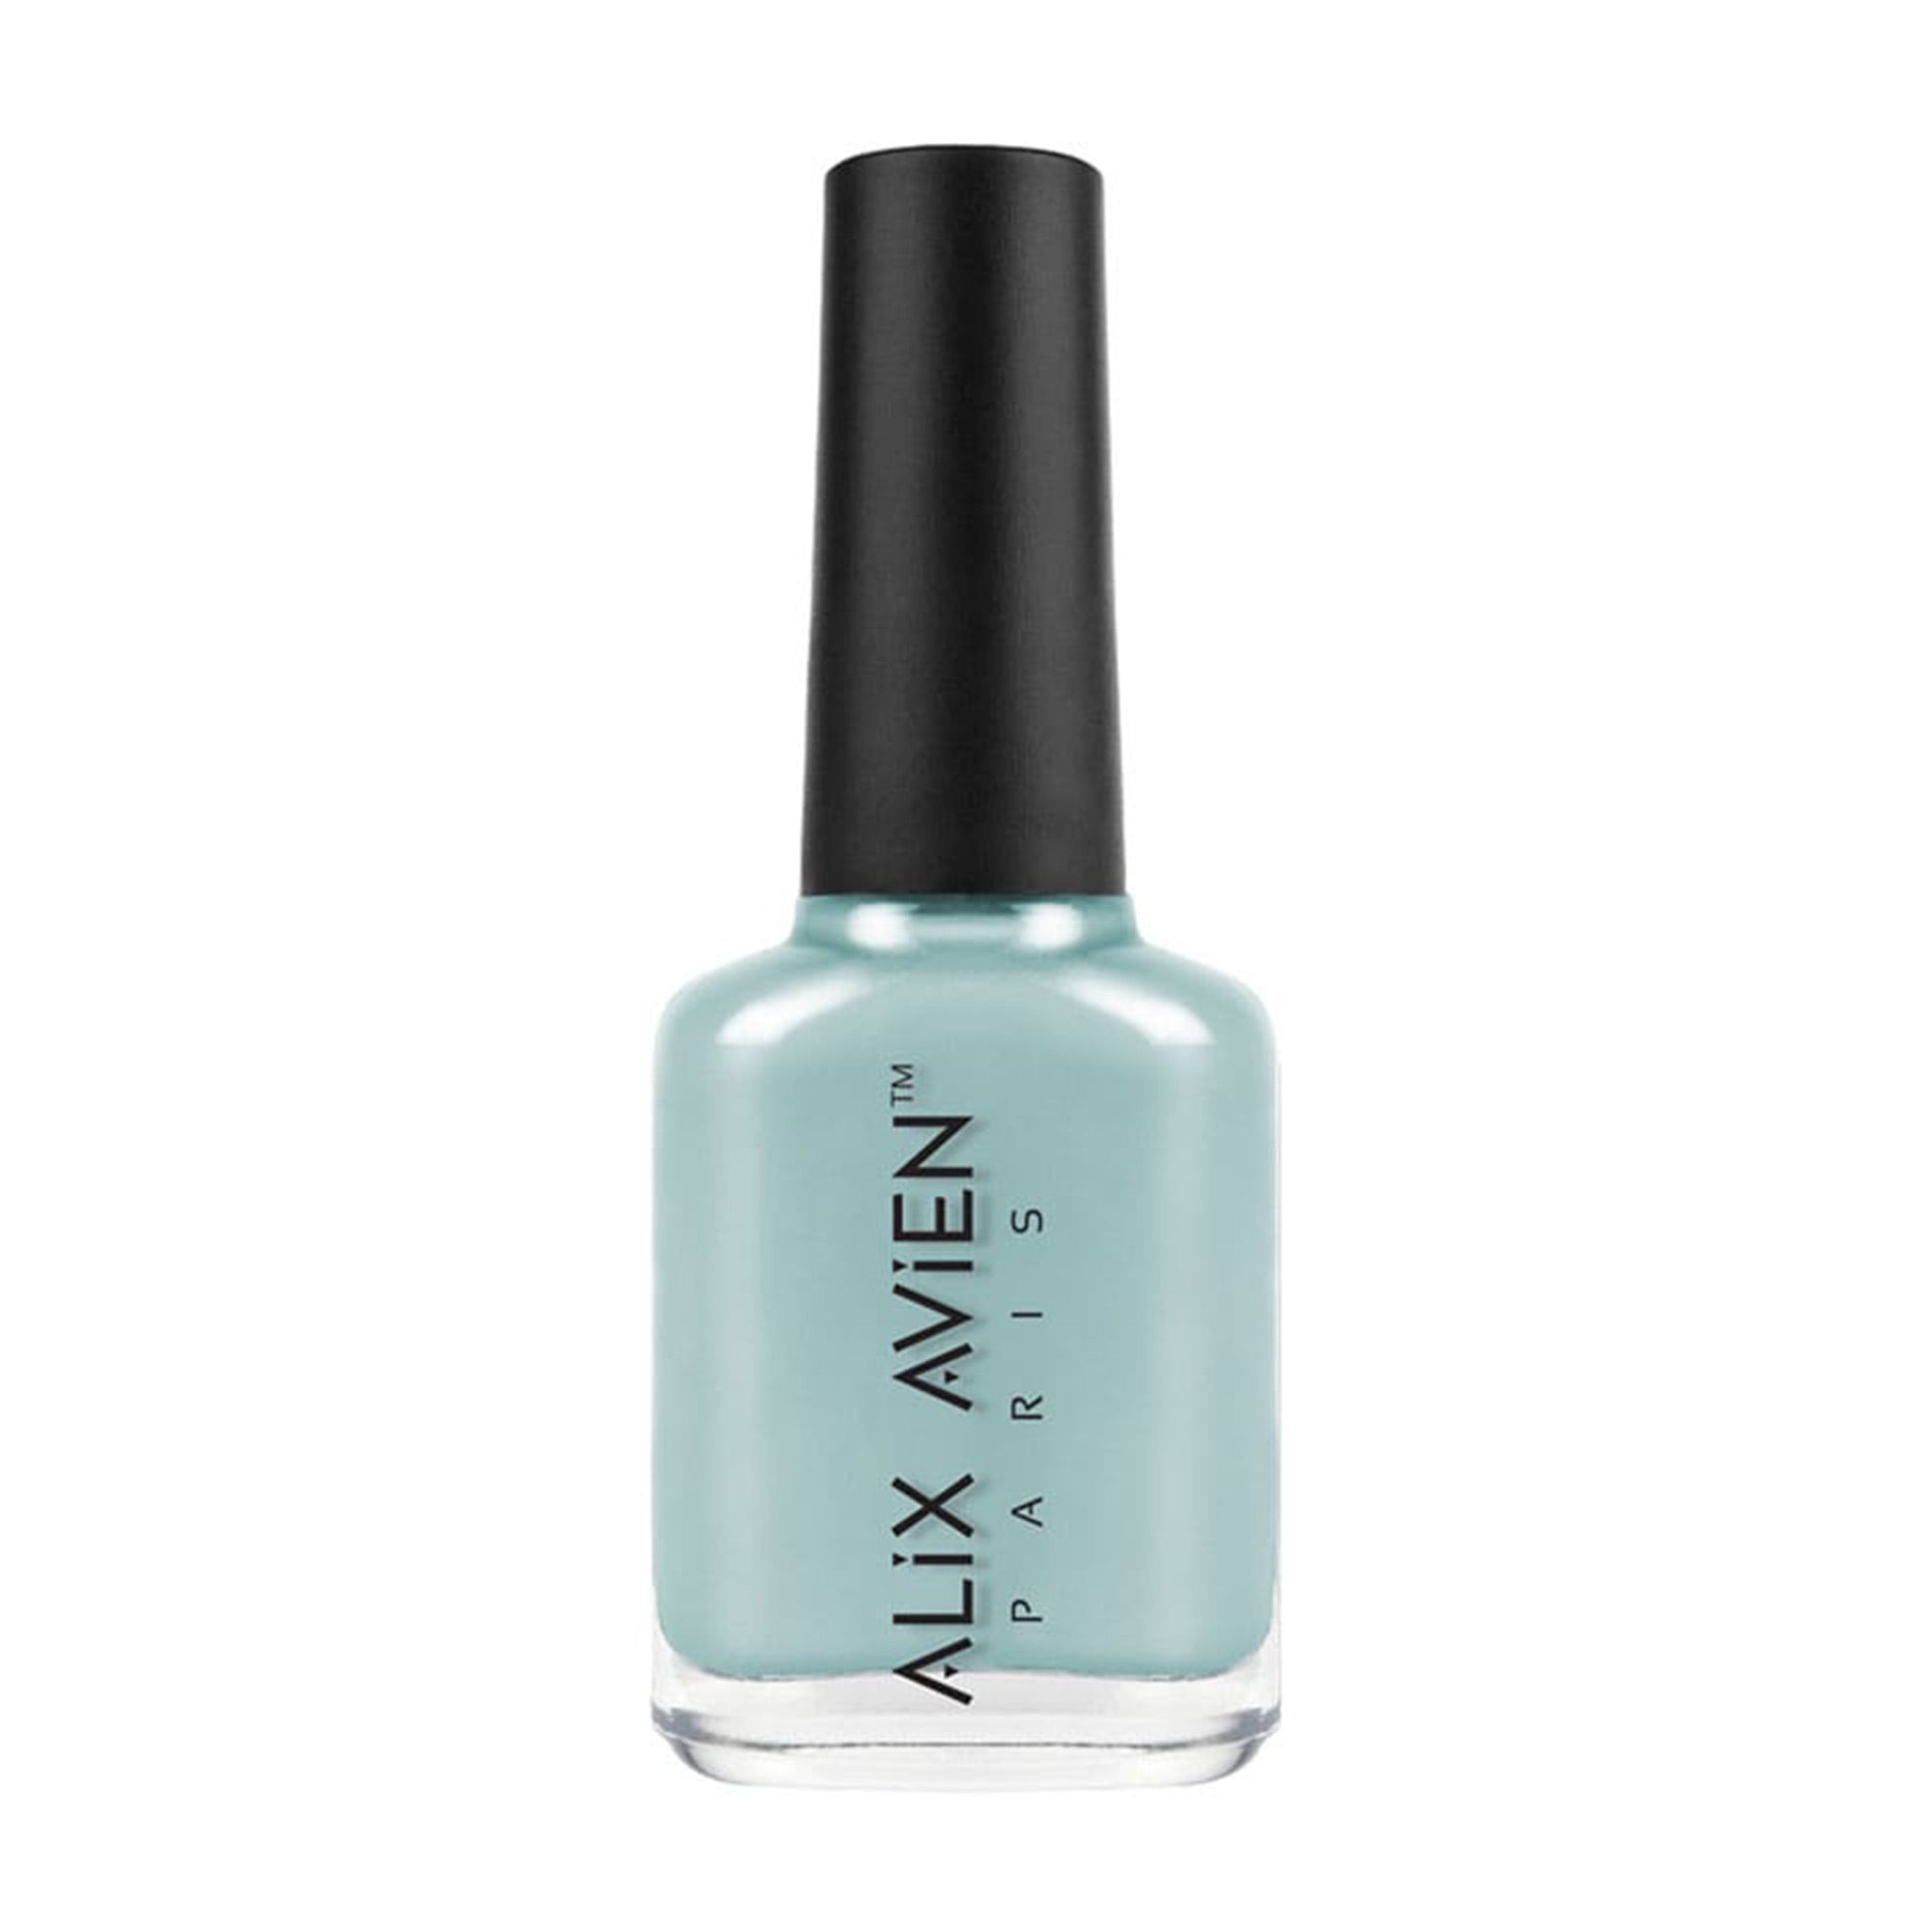 Alix Avien - Nail Polish No.71 (Ice Blue)